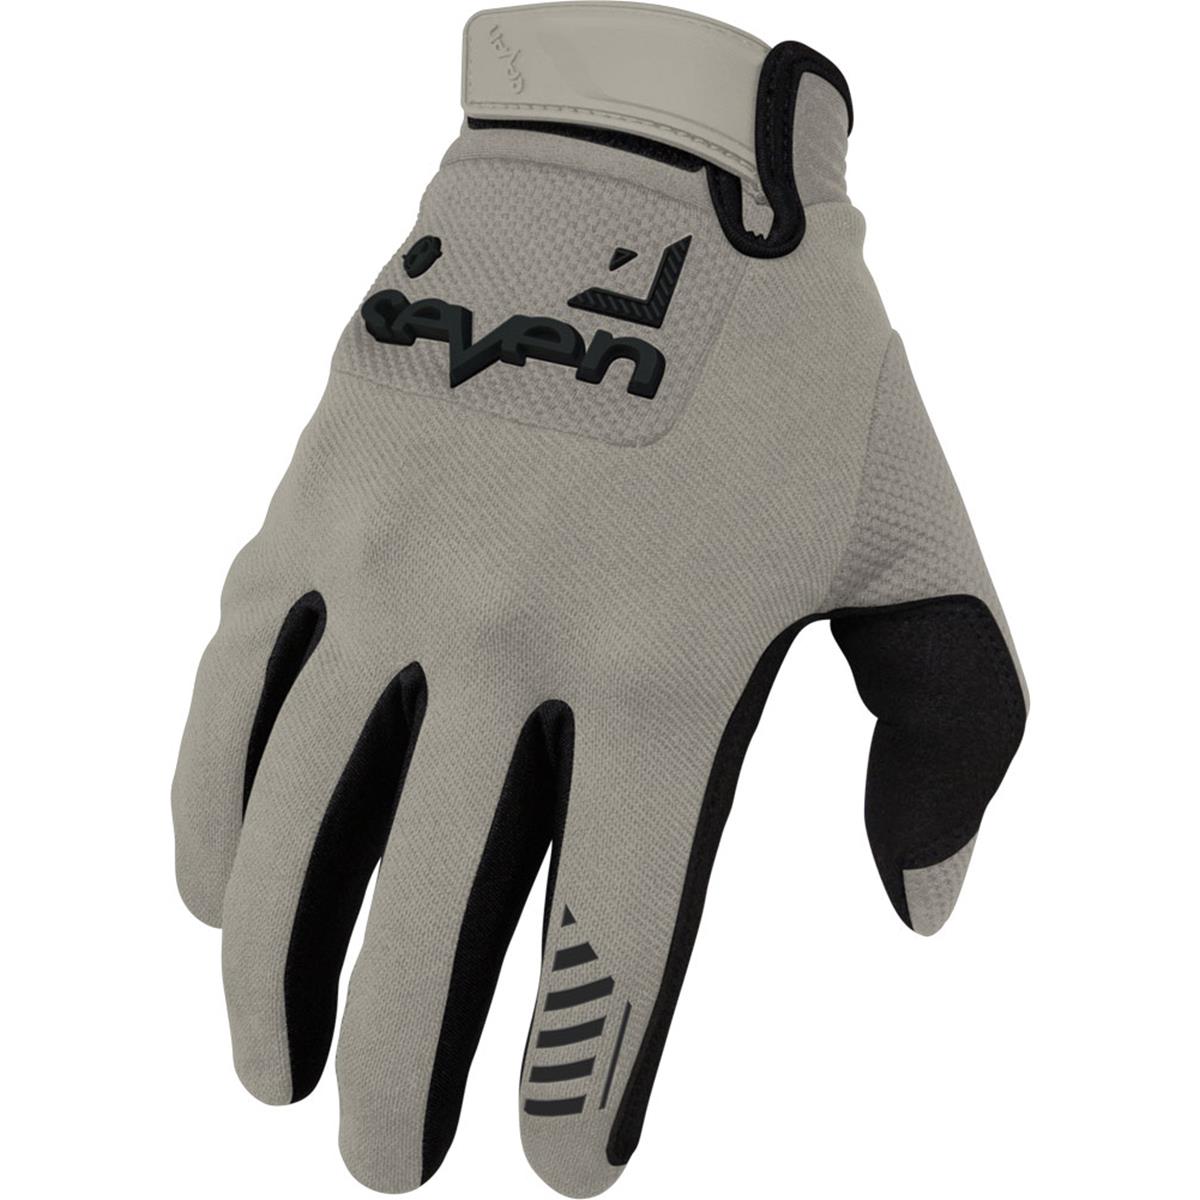 Seven MX Gloves Endure Avid Sand